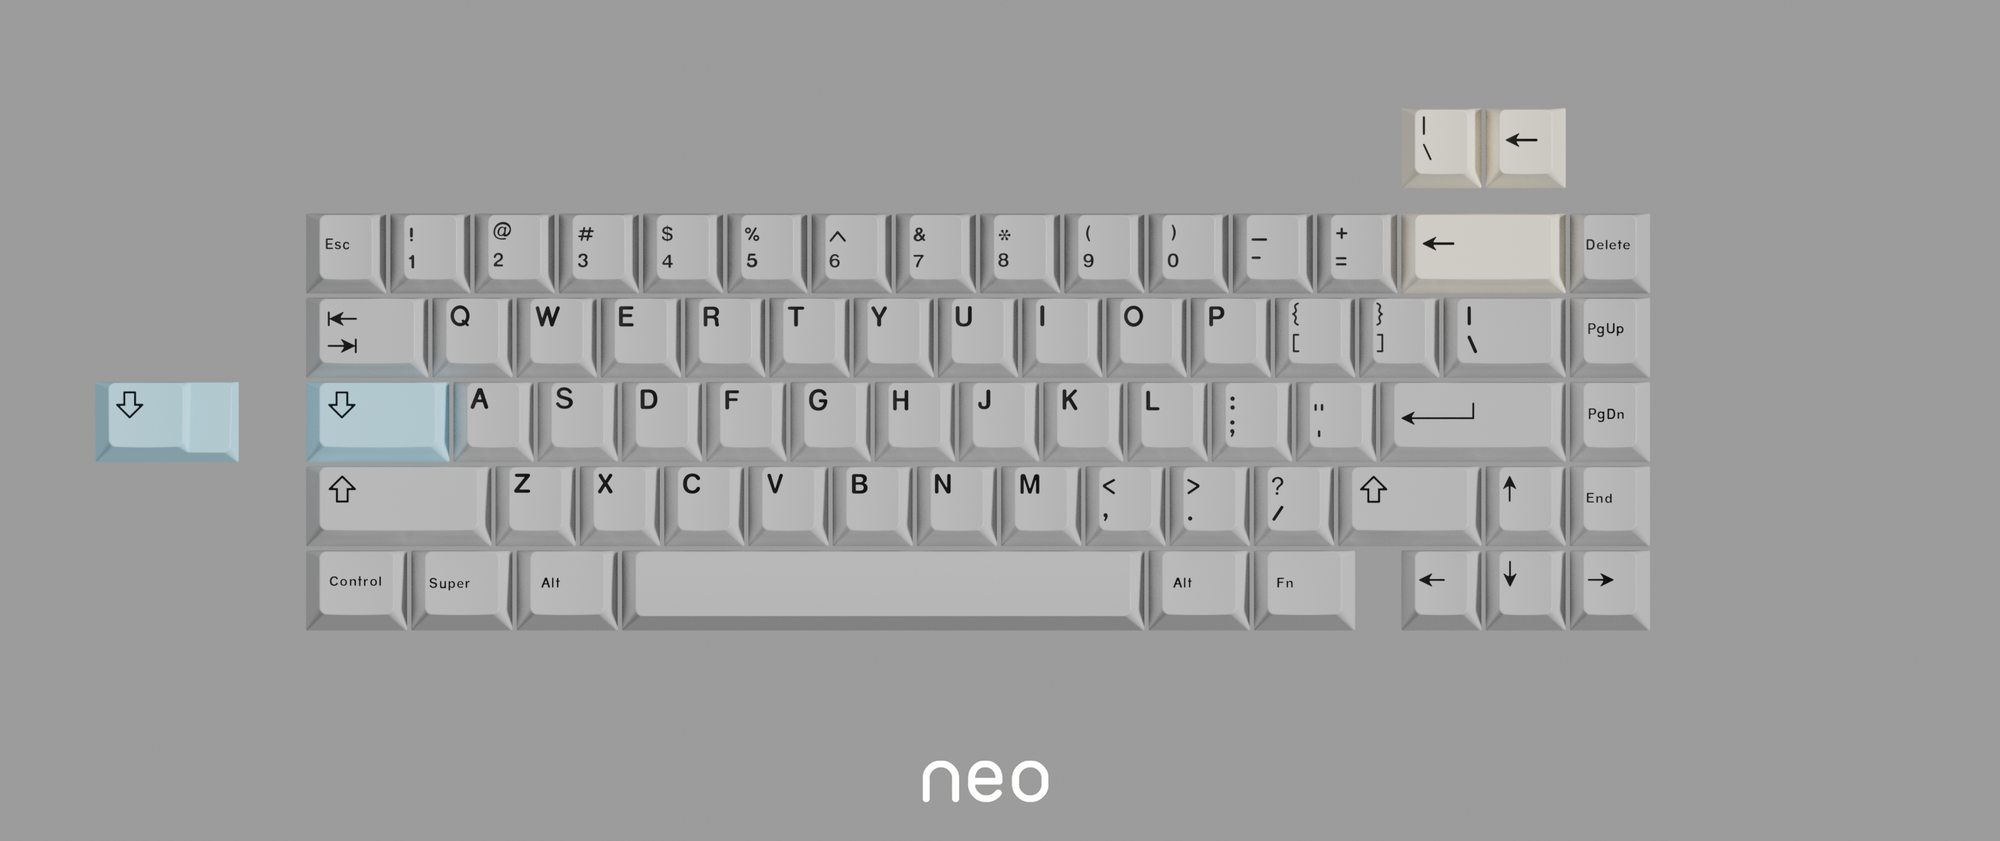 Neo65 - PCBs (Pre-Order)